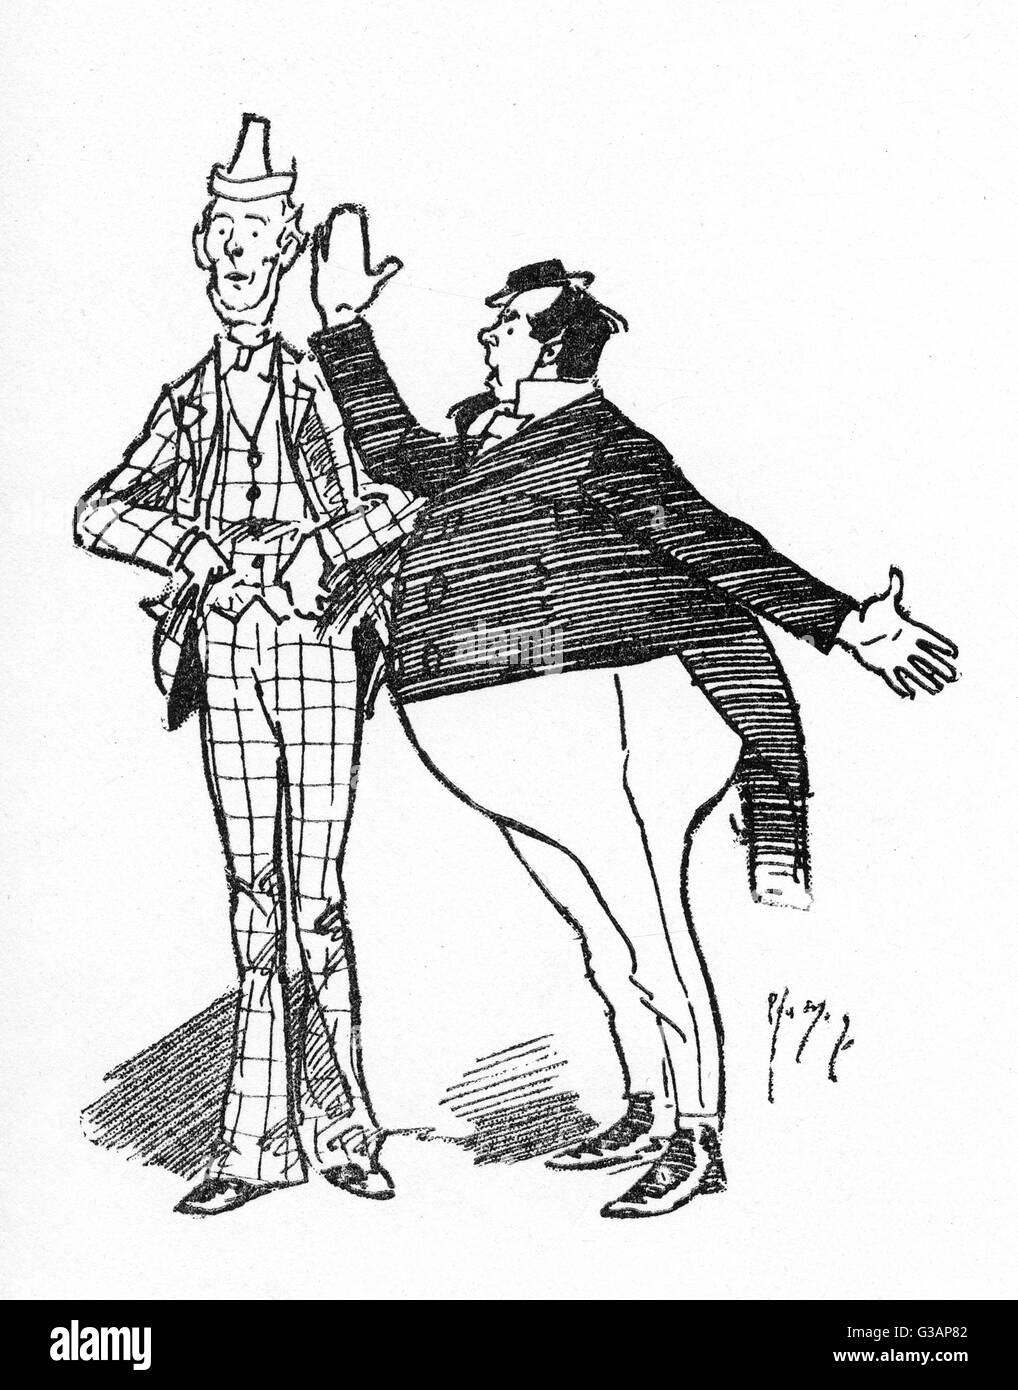 Las dos direcciones MAC - un acto de comedia teatral de los diversos teatros de Londres de la era victoriana. Fecha: circa 1895 Foto de stock